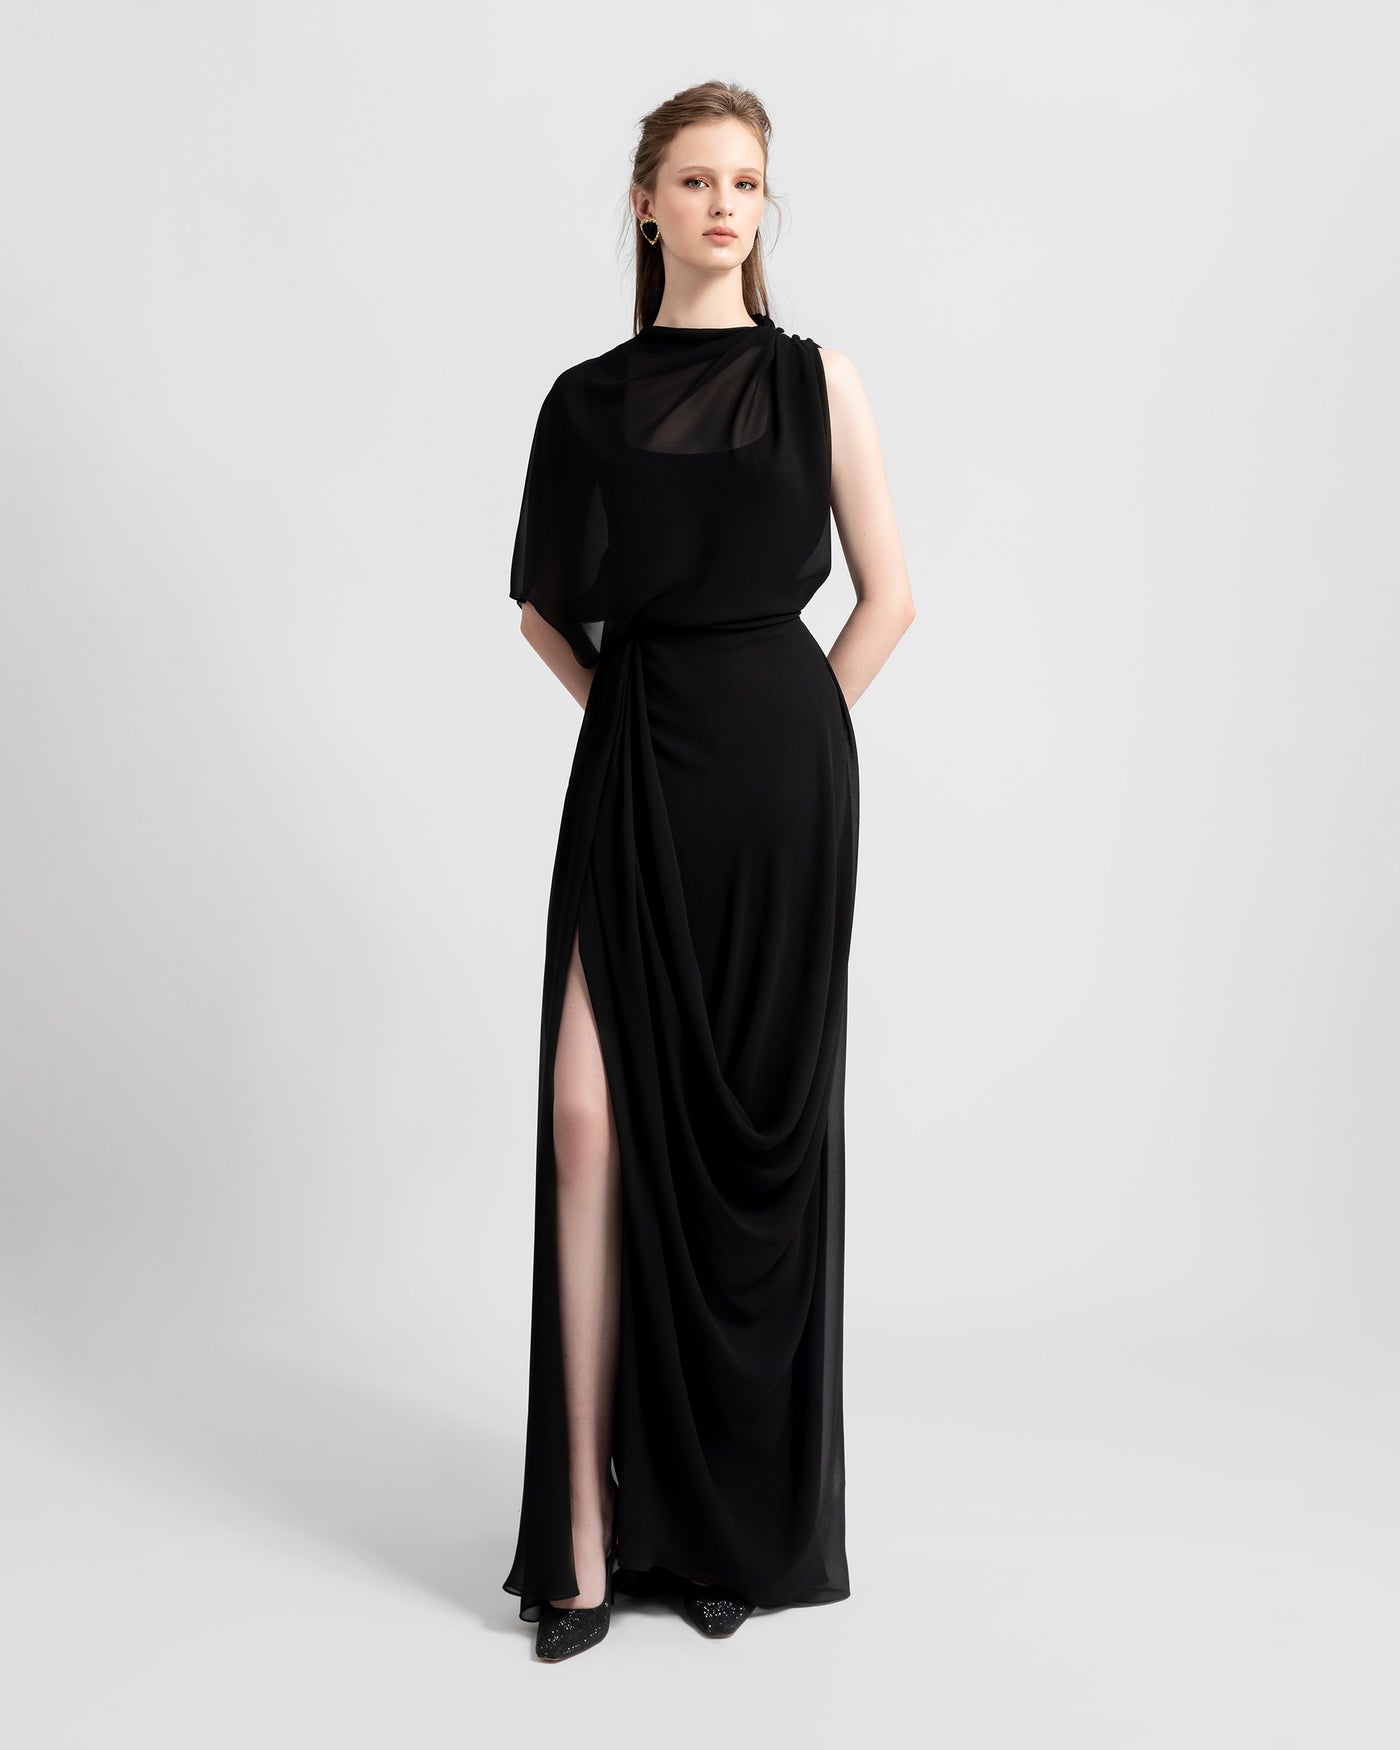 Asymmetrical chiffon black dress